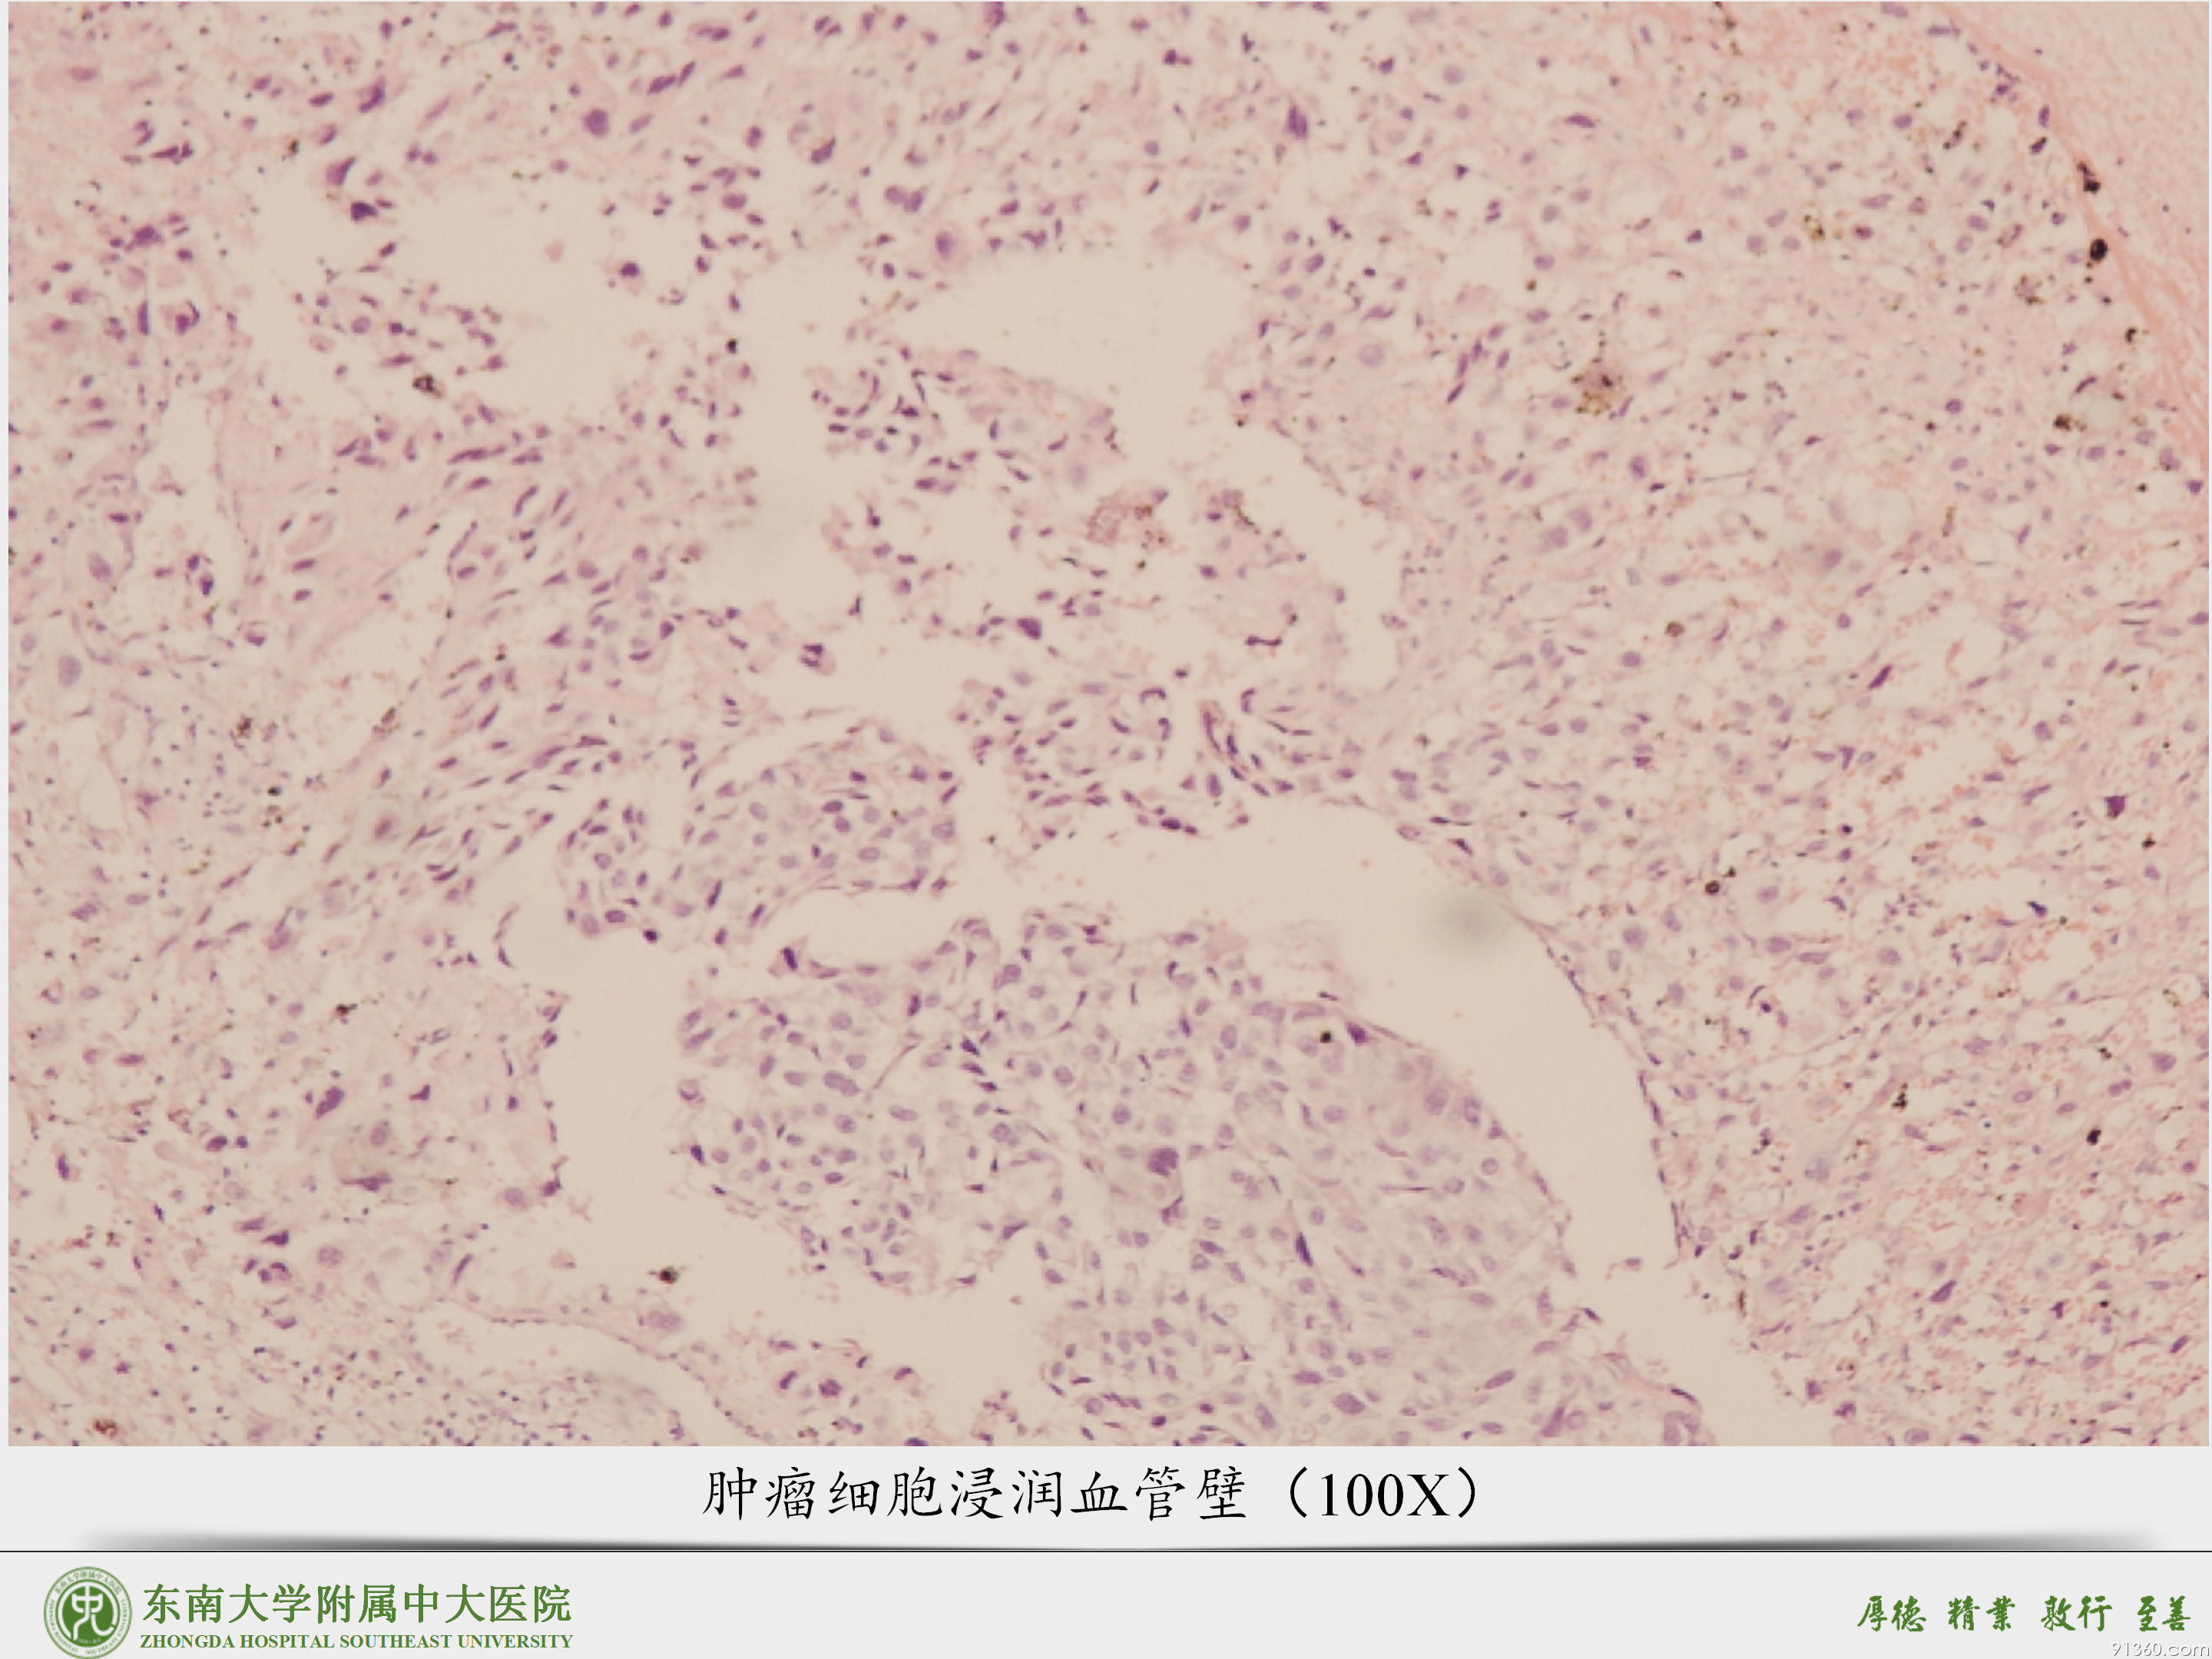 中大病例推送  胎盘部位滋养细胞肿瘤_05.png